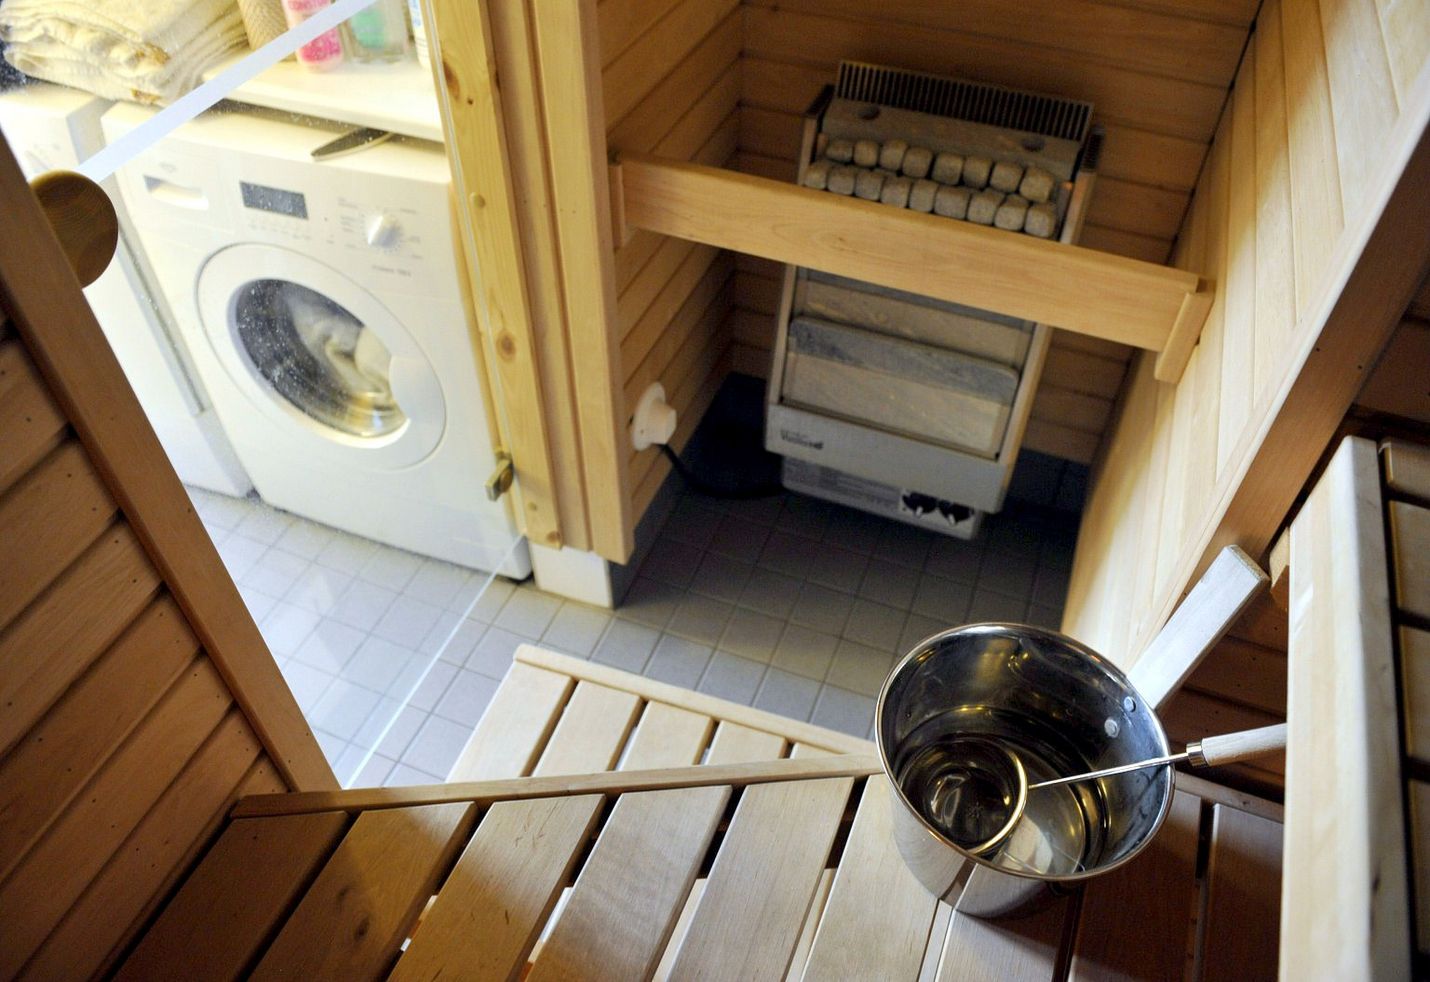 Sähkösaunan lämmityskertojen vähentämistä tai jopa saunomisesta kokonaan luopumista pohtii moni Länsi-Suomen kyselyyn vastannut. Pyykinpesukonetta ja muita kodin laitteita pyritään käyttämään silloin, kun sähkö on halvempaa.